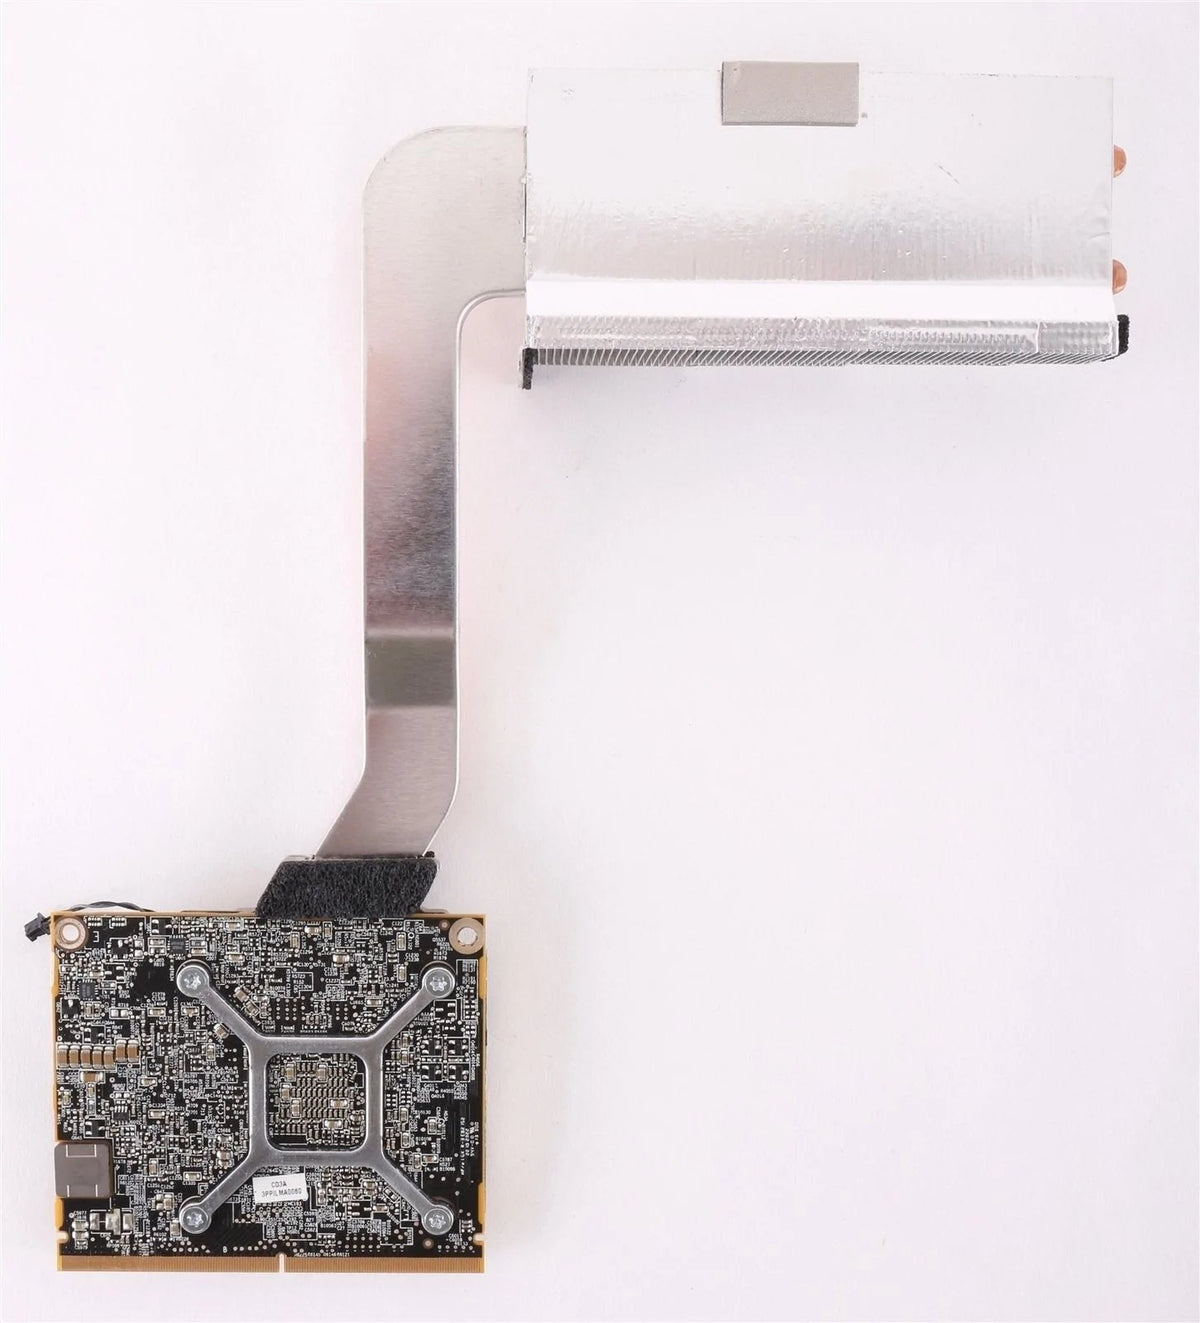 661-5546 - Apple iMac 21.5&quot; A1311 Mid-2010 ATI Radeon HD 5670 512MB Video Card